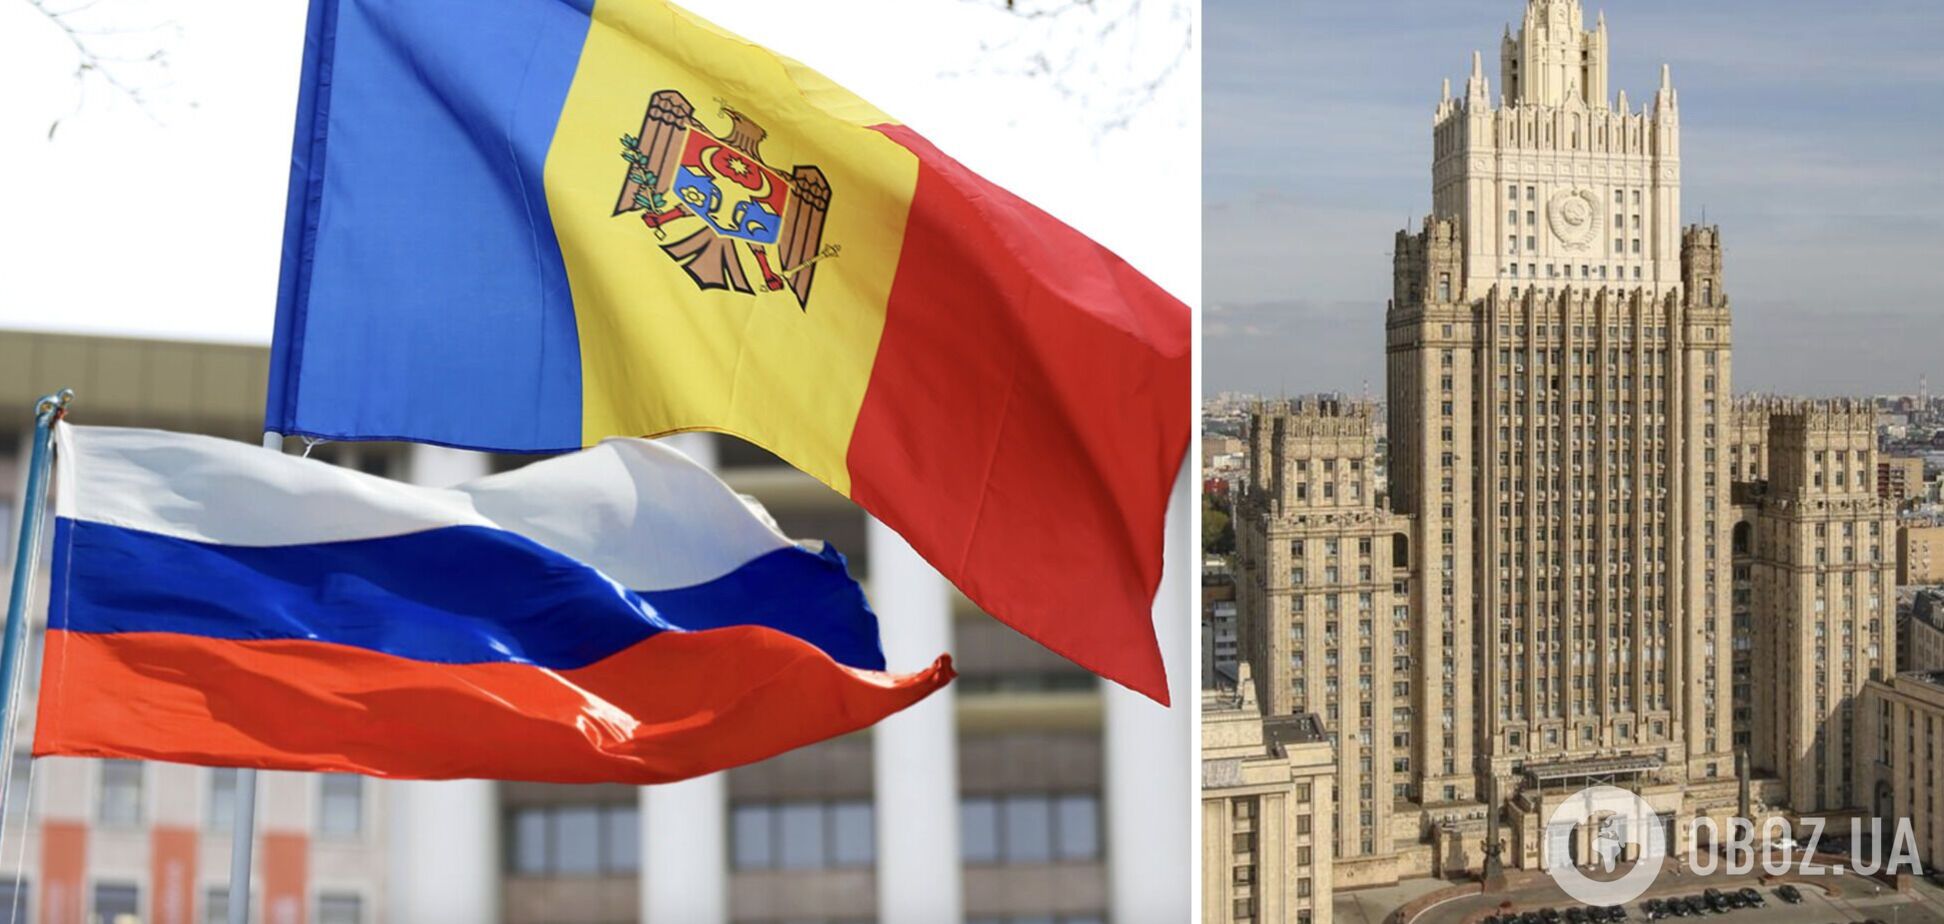 МИД РФ вызвал молдавского посла из-за 'недружественных действий' Кишинева: что известно